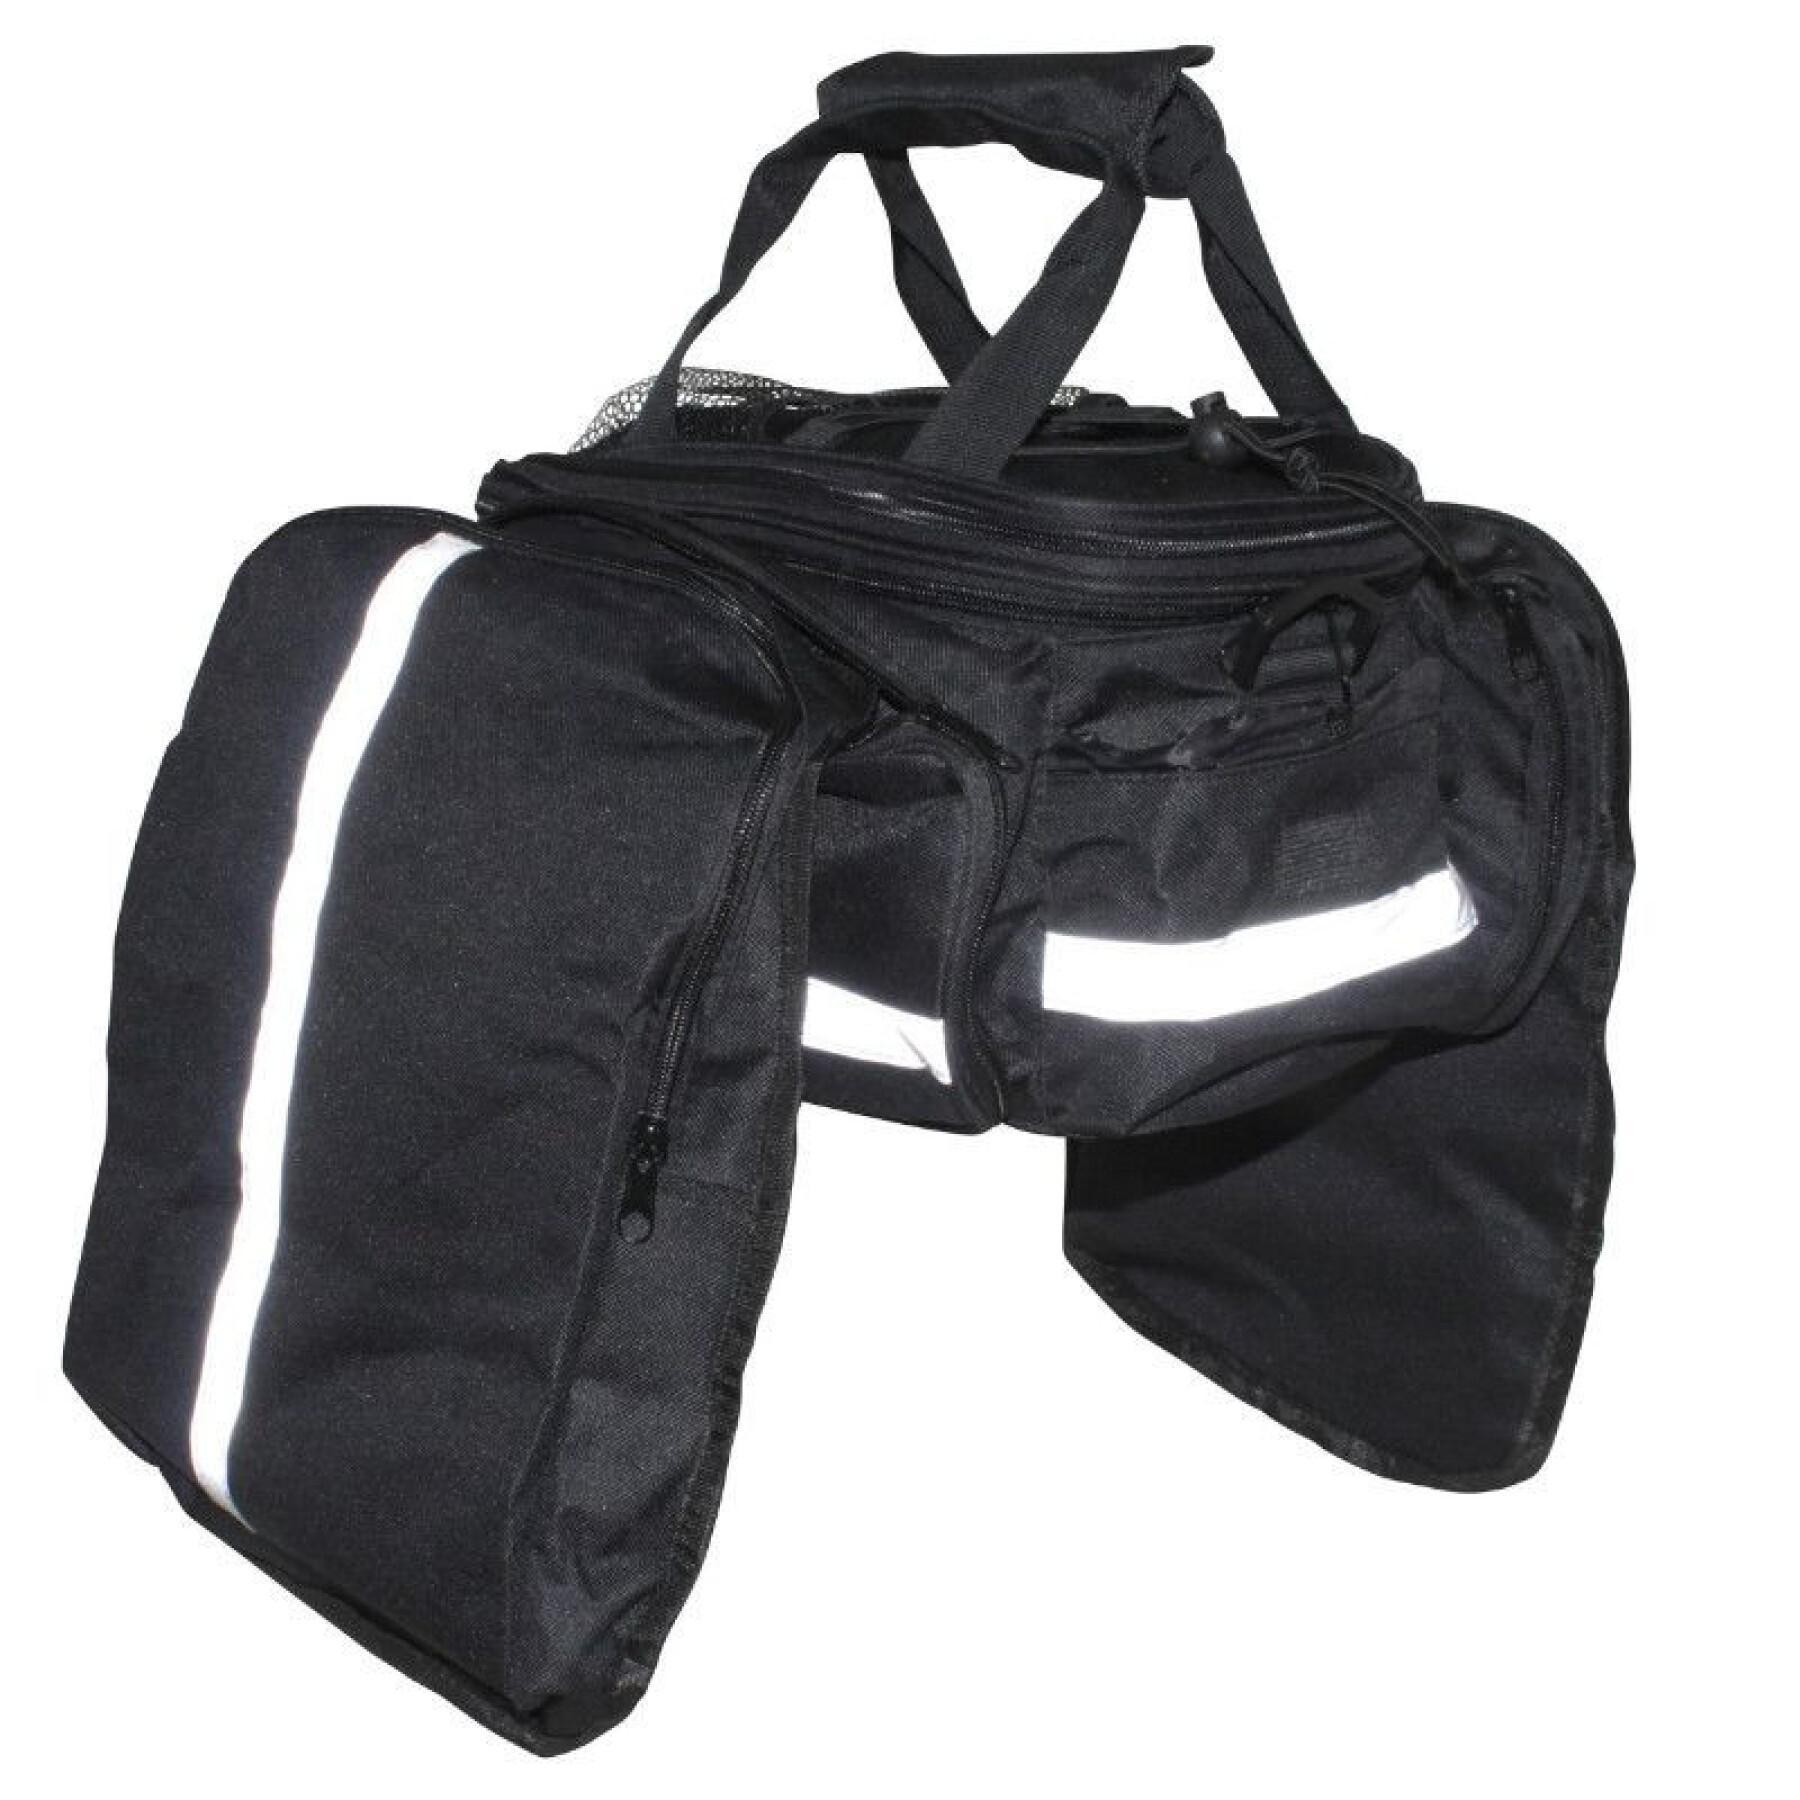 Cykelväska med kardborrefäste för pakethållare och vattentäta packväskor på båda sidor Newton N1 30 x 17 x 13 cm